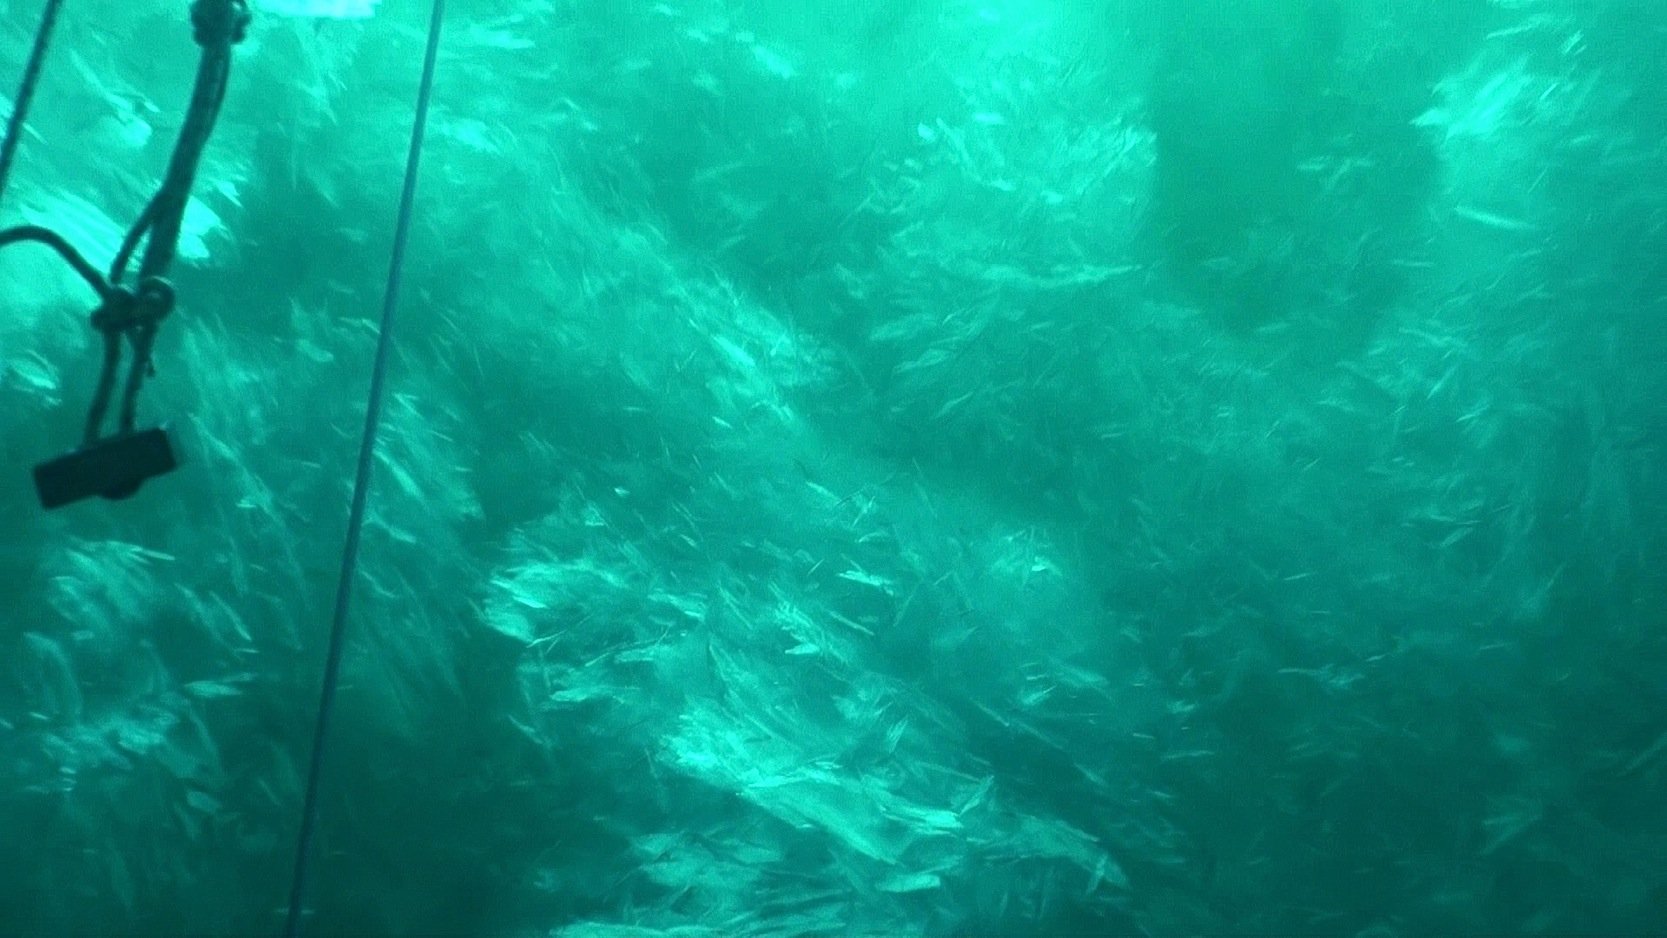 Der größte Cocktail des Meeres: Wie Crushed Ice wirken die Schichten unter dem Schelfeis der Antarktis, in denen sich Wasser und Eissplitter zu einer Eissuppe vermischen. Sie ist Schutz- und Lebensraum für kleinste Krebse und Fische. Sie sind Lebensgrundlage für größere Meeresbewohner.